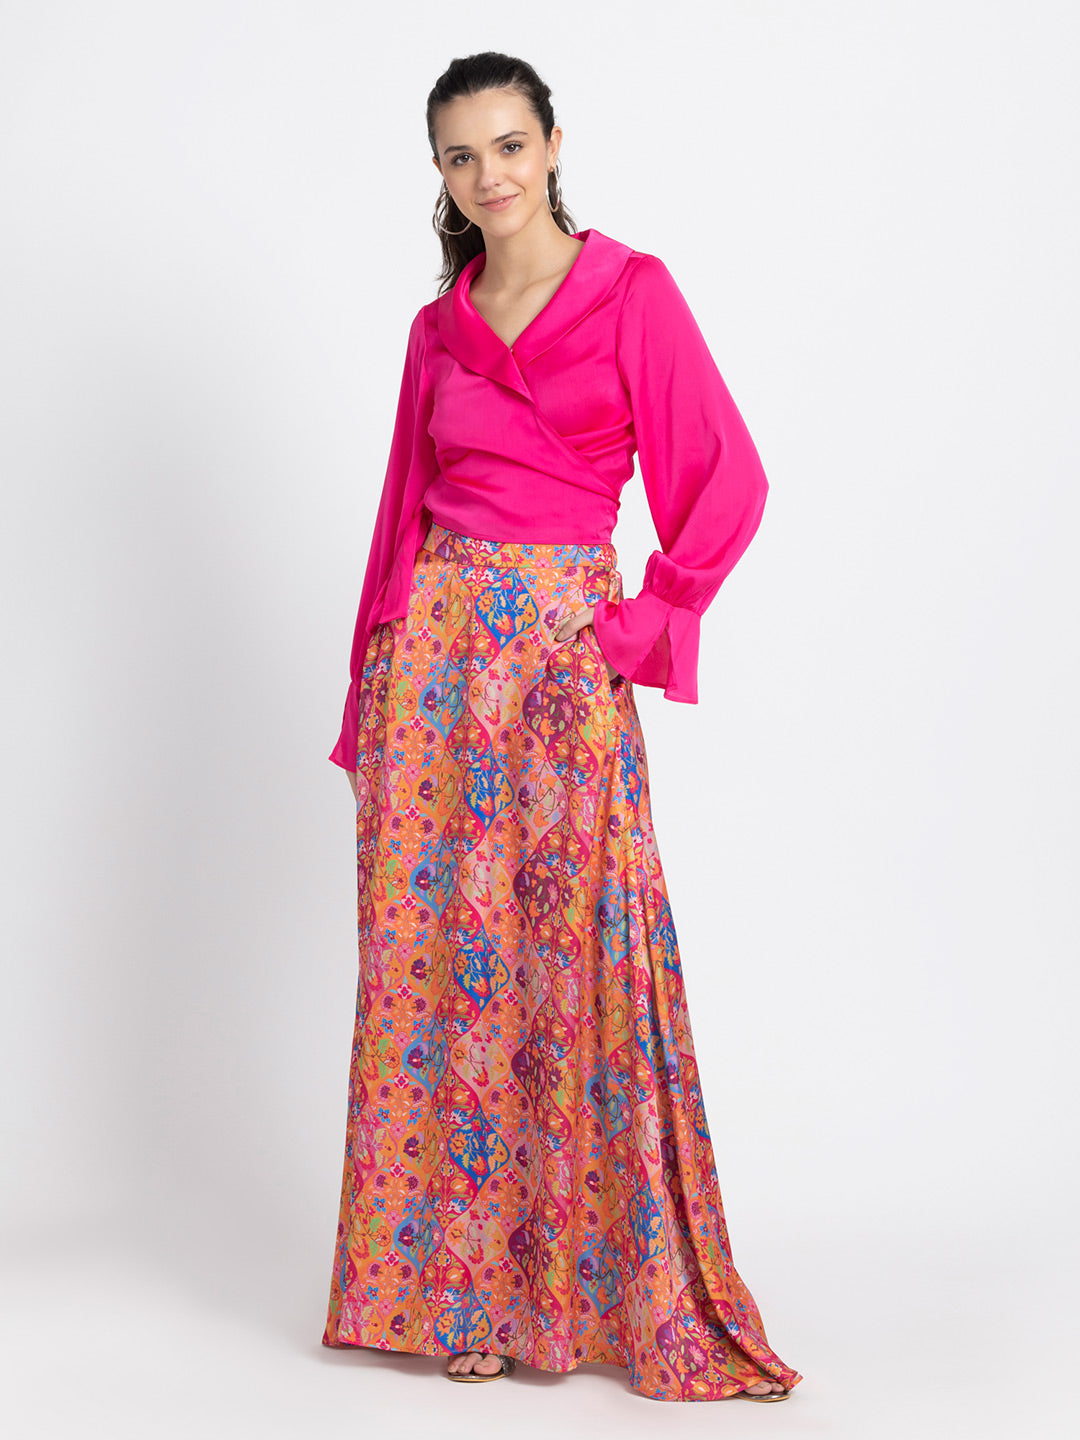 Pastiche Flora Long Skirt from Shaye , Skirt for women